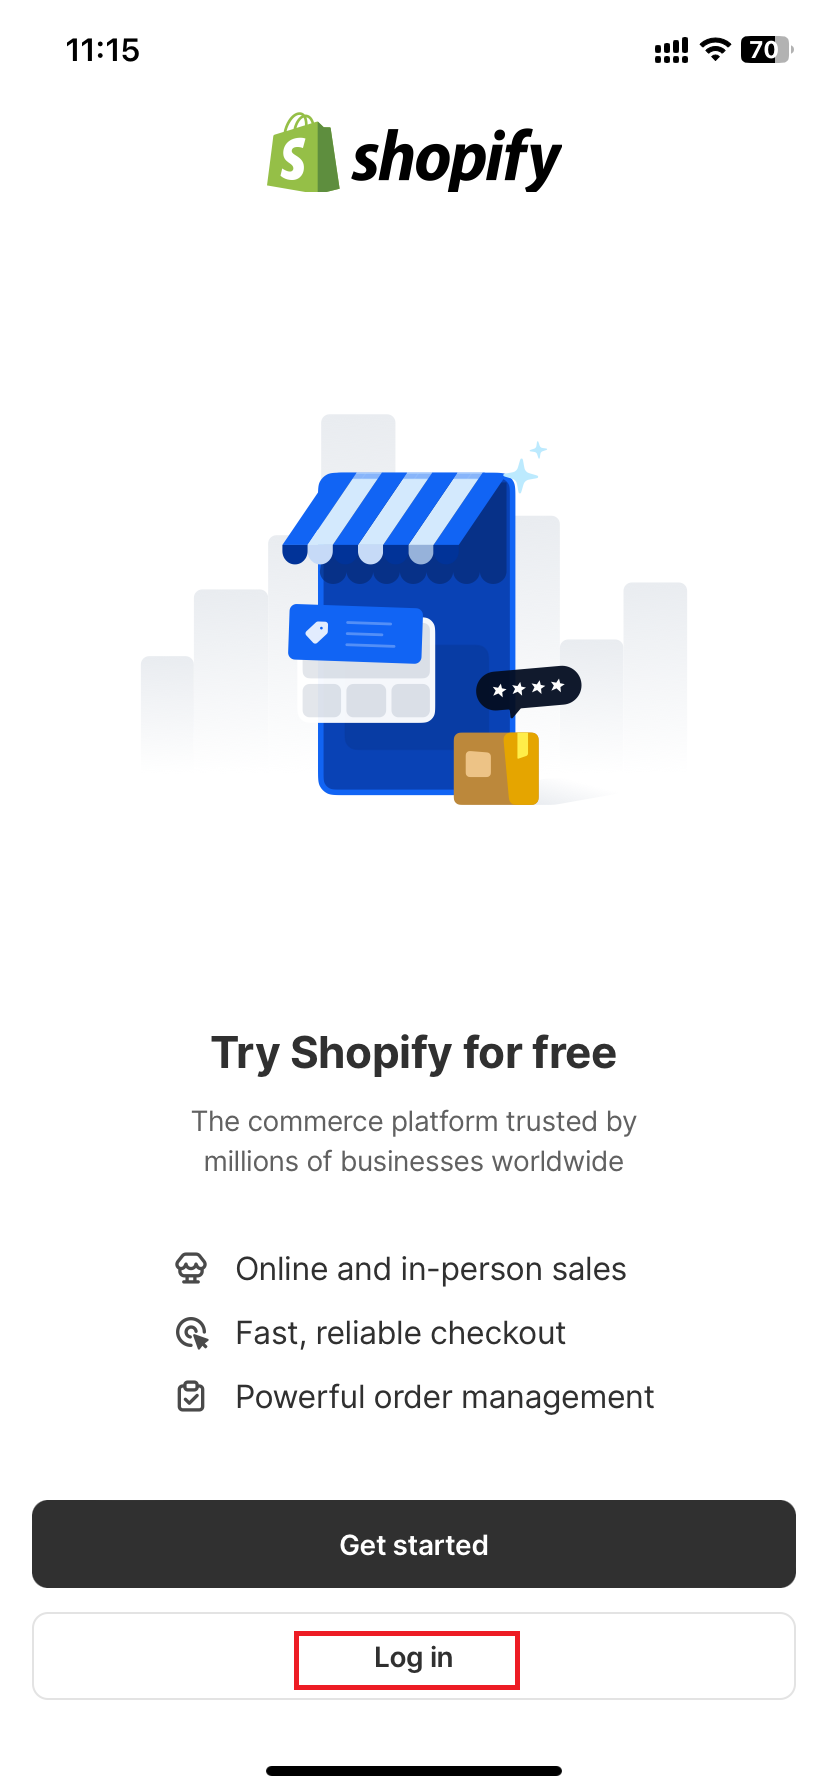 click “Log in” in shopify app